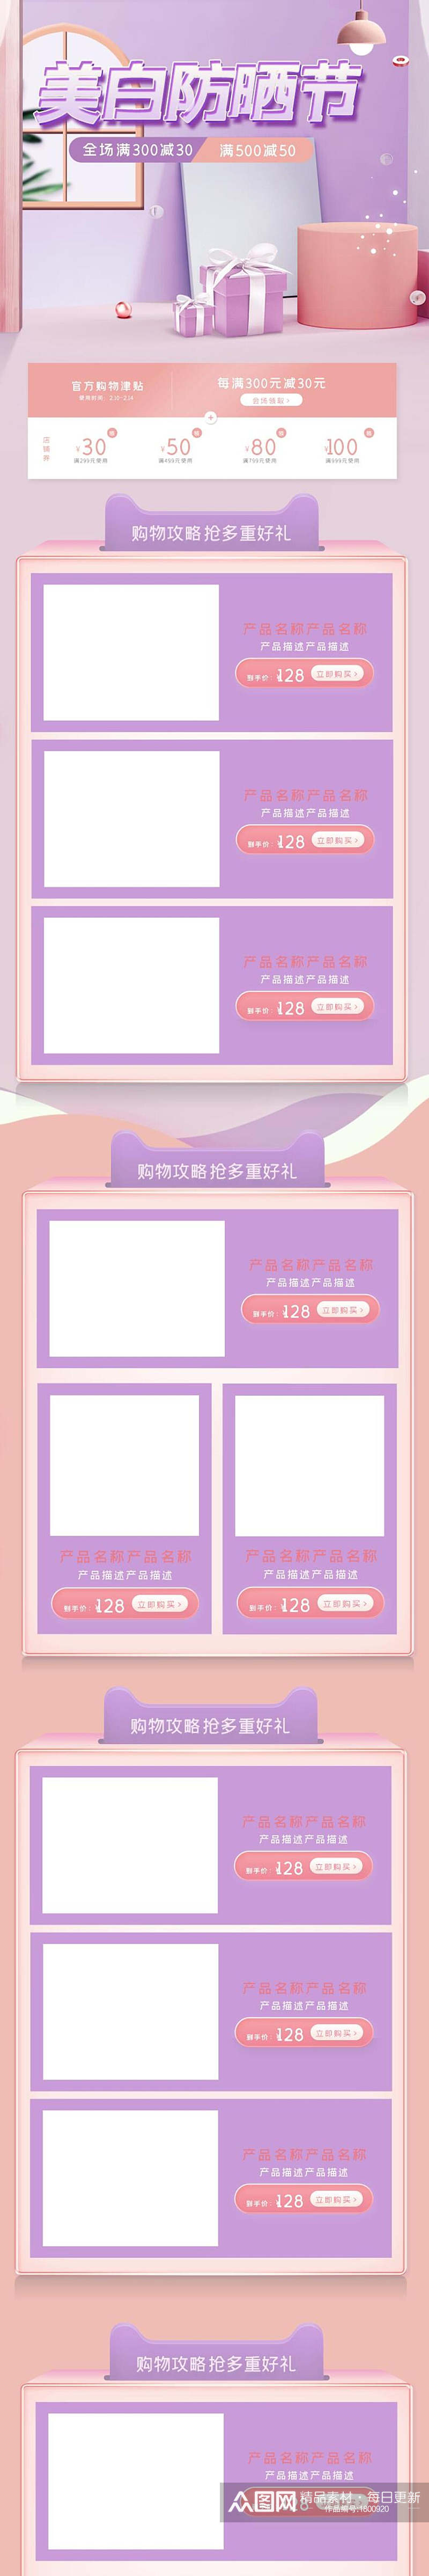 清新紫色美白防晒节电商店铺首页素材